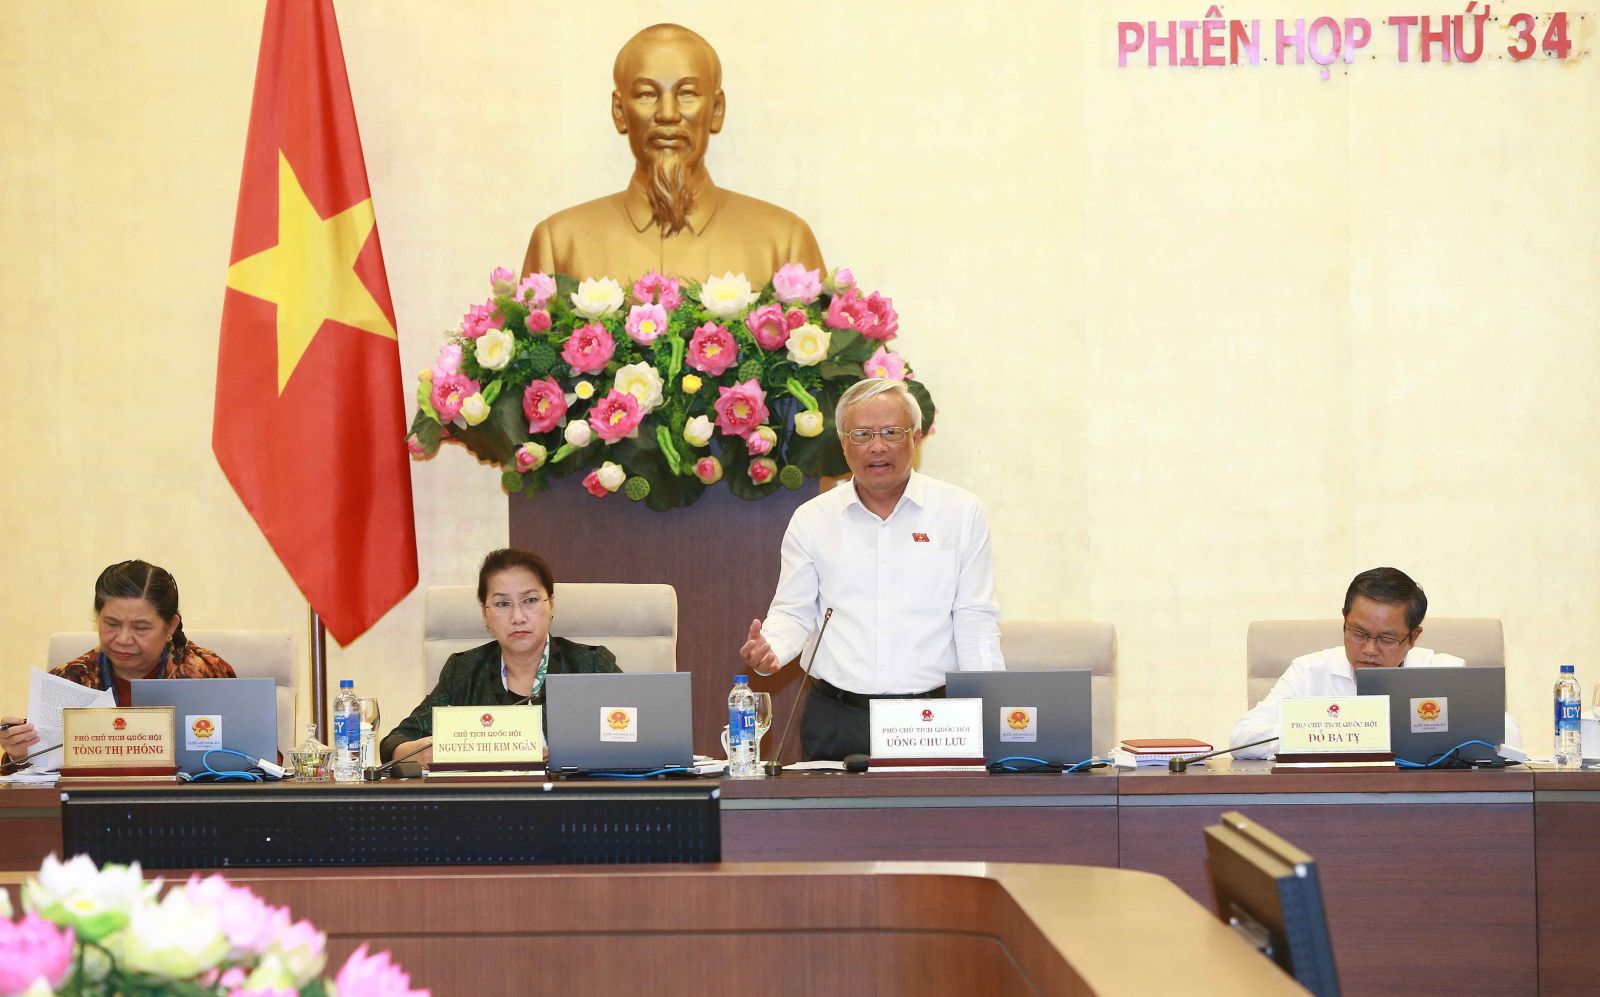 Phiên họp thứ 34 Uỷ ban Thường vụ Quốc hội. Ảnh: VGP/ Lê Sơn